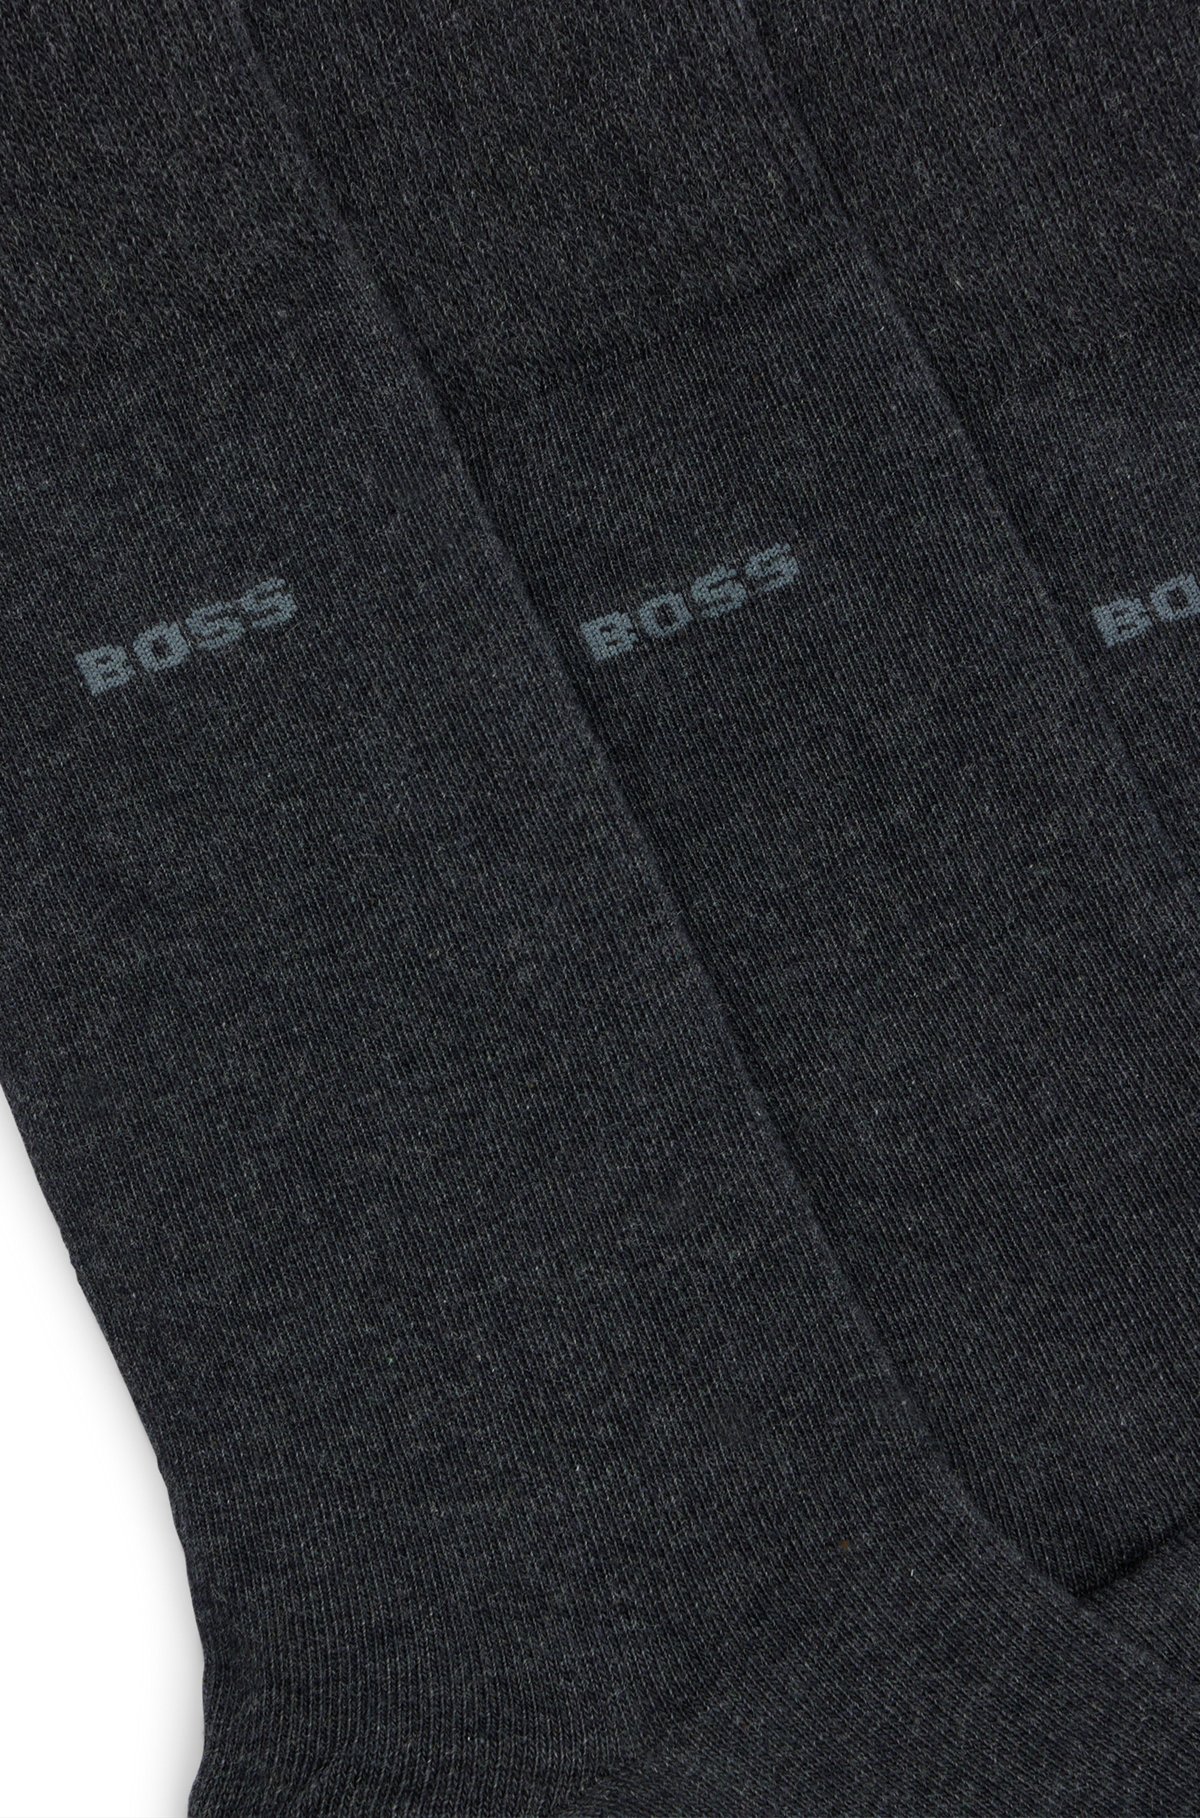 Conjunto de três pares de meias regulares em tecido elástico, Cinzento-escuro